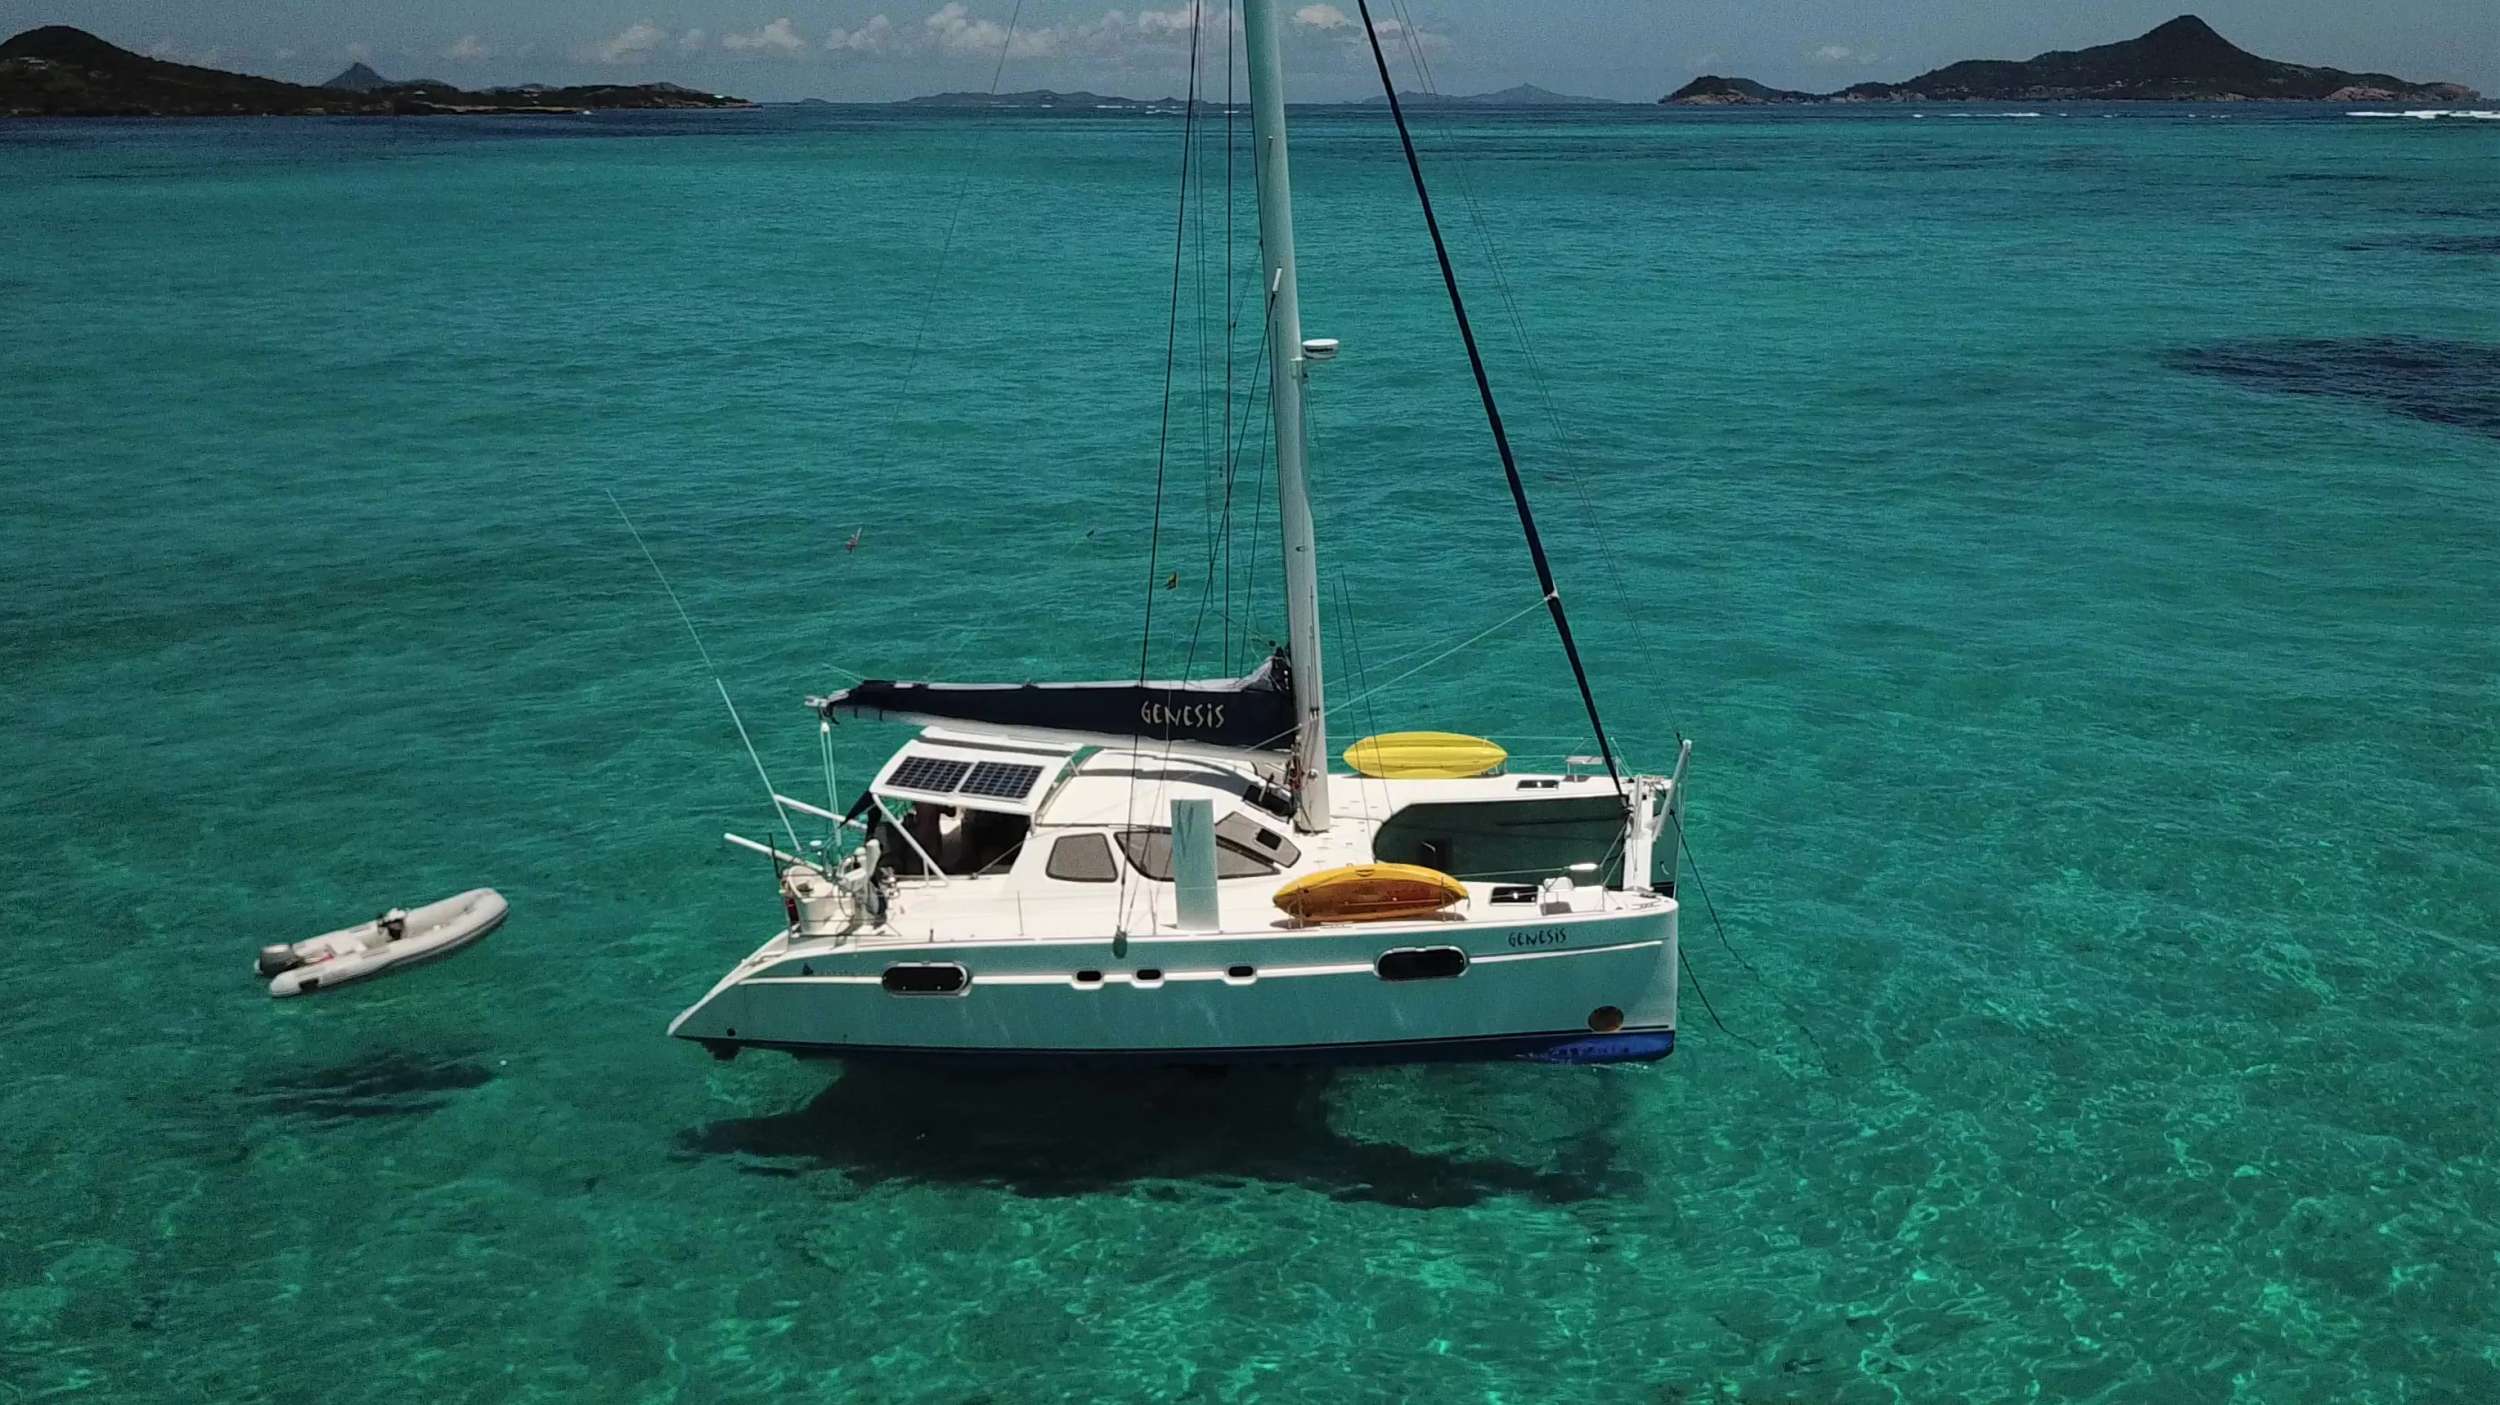 GENESIS Yacht Charter - GENESIS floating in Caribbean Blue